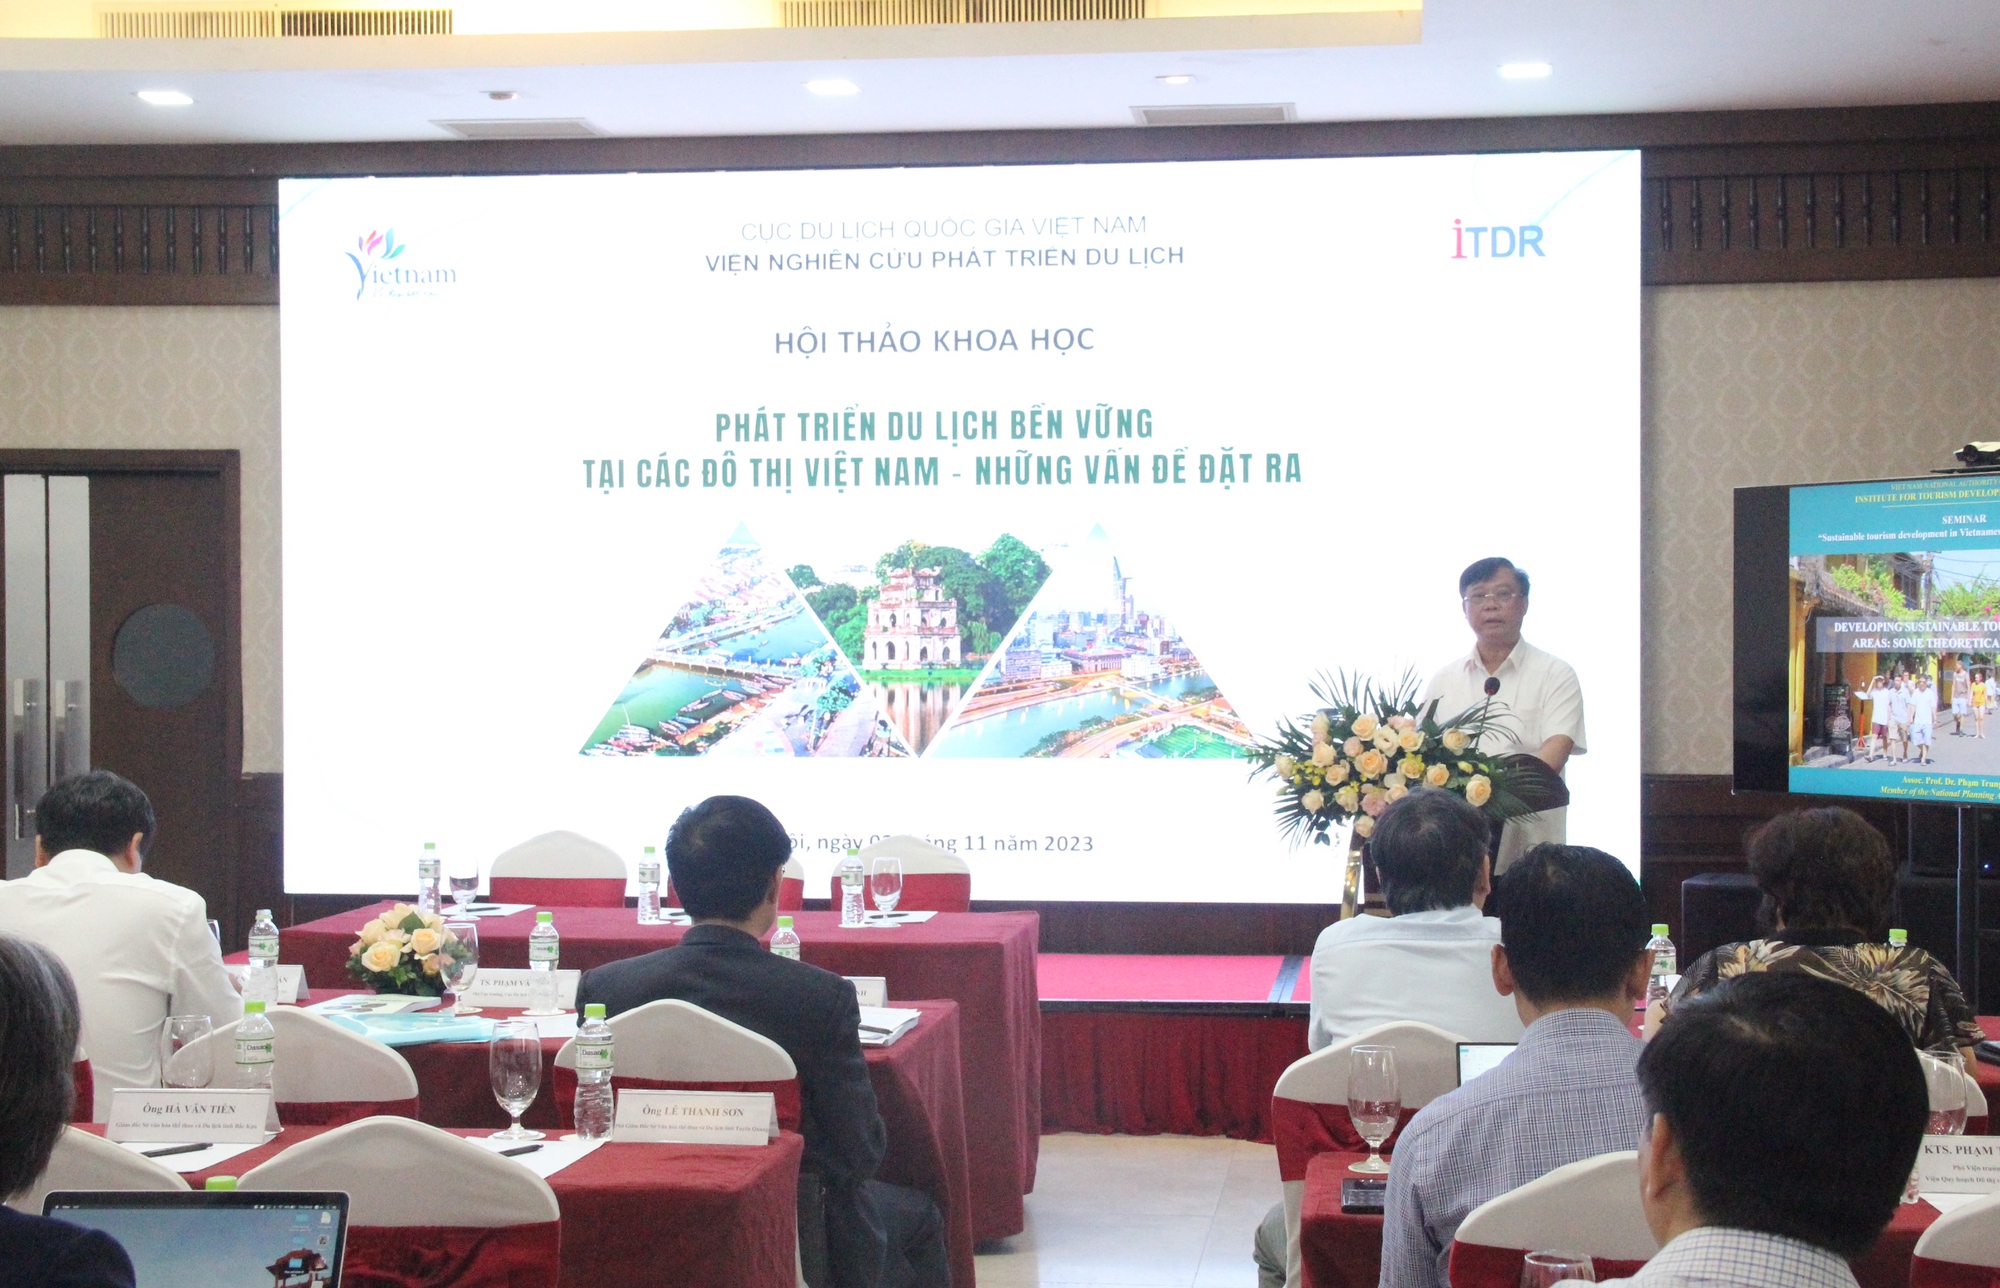 Nhiều vấn đề đặt ra đối với việc phát triển du lịch bền vững tại các đô thị ở Việt Nam - Ảnh 1.